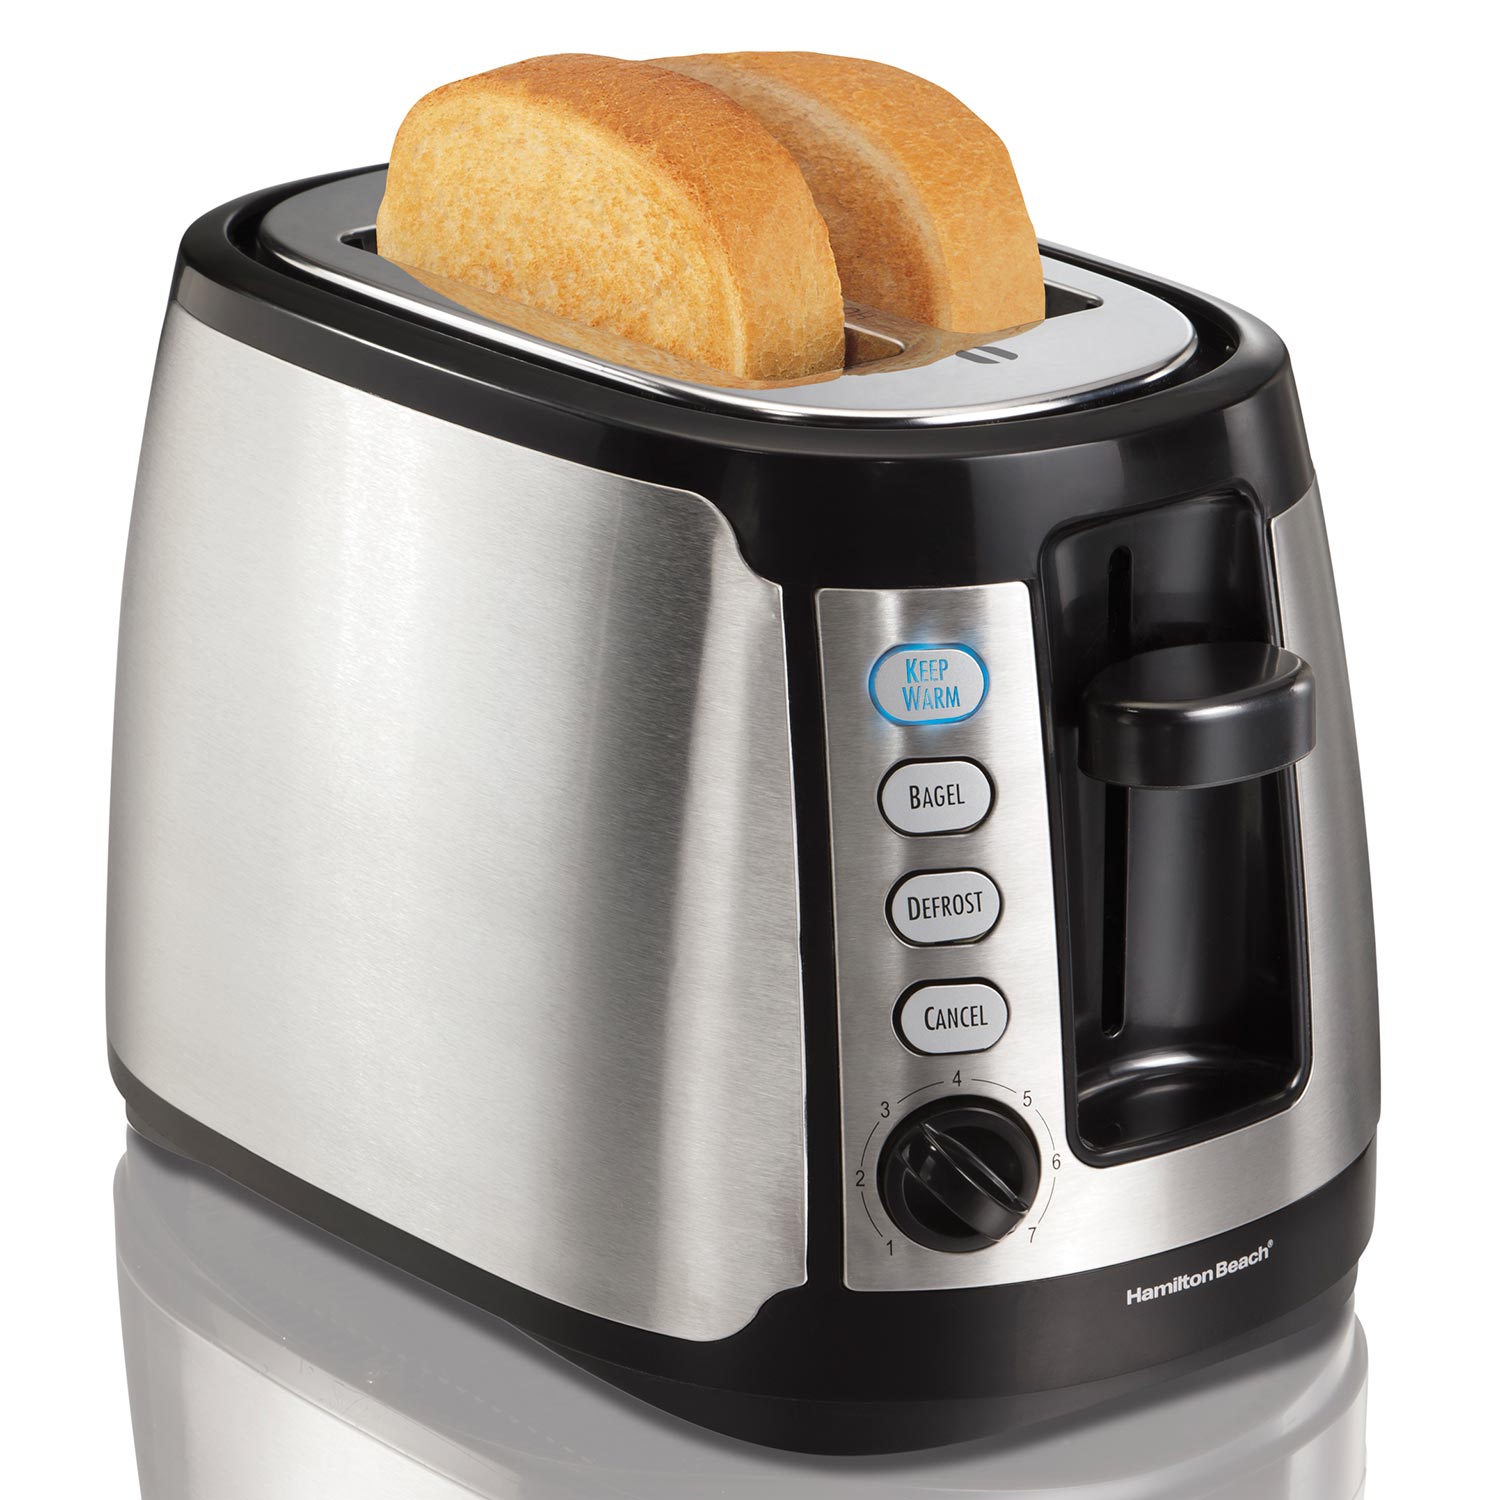 Keep Warm Toaster (22811)